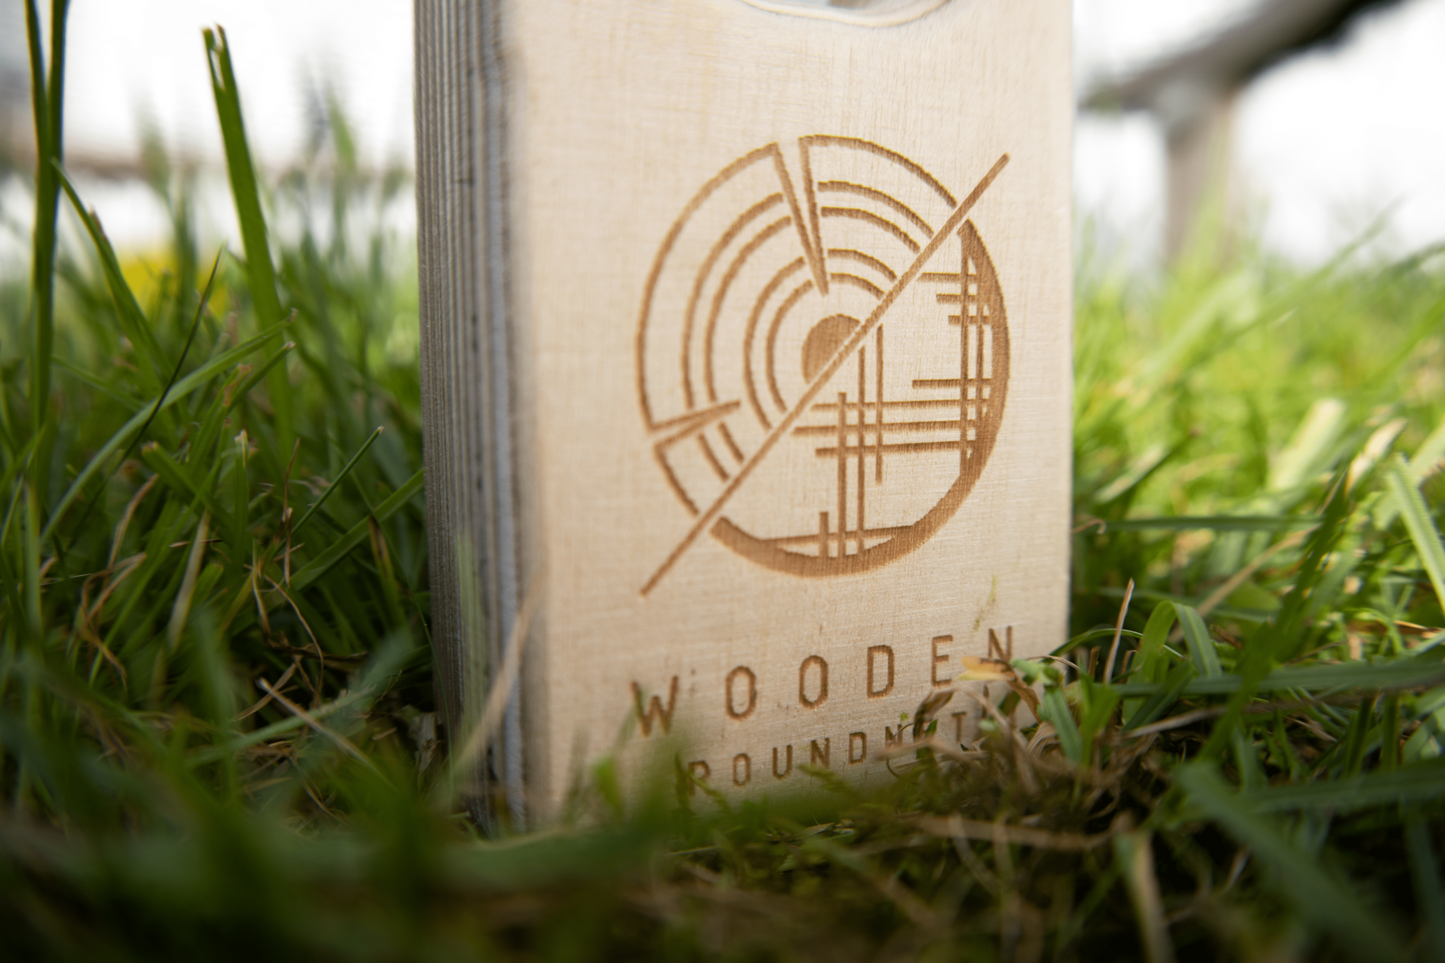 Wooden Roundnet Modell II